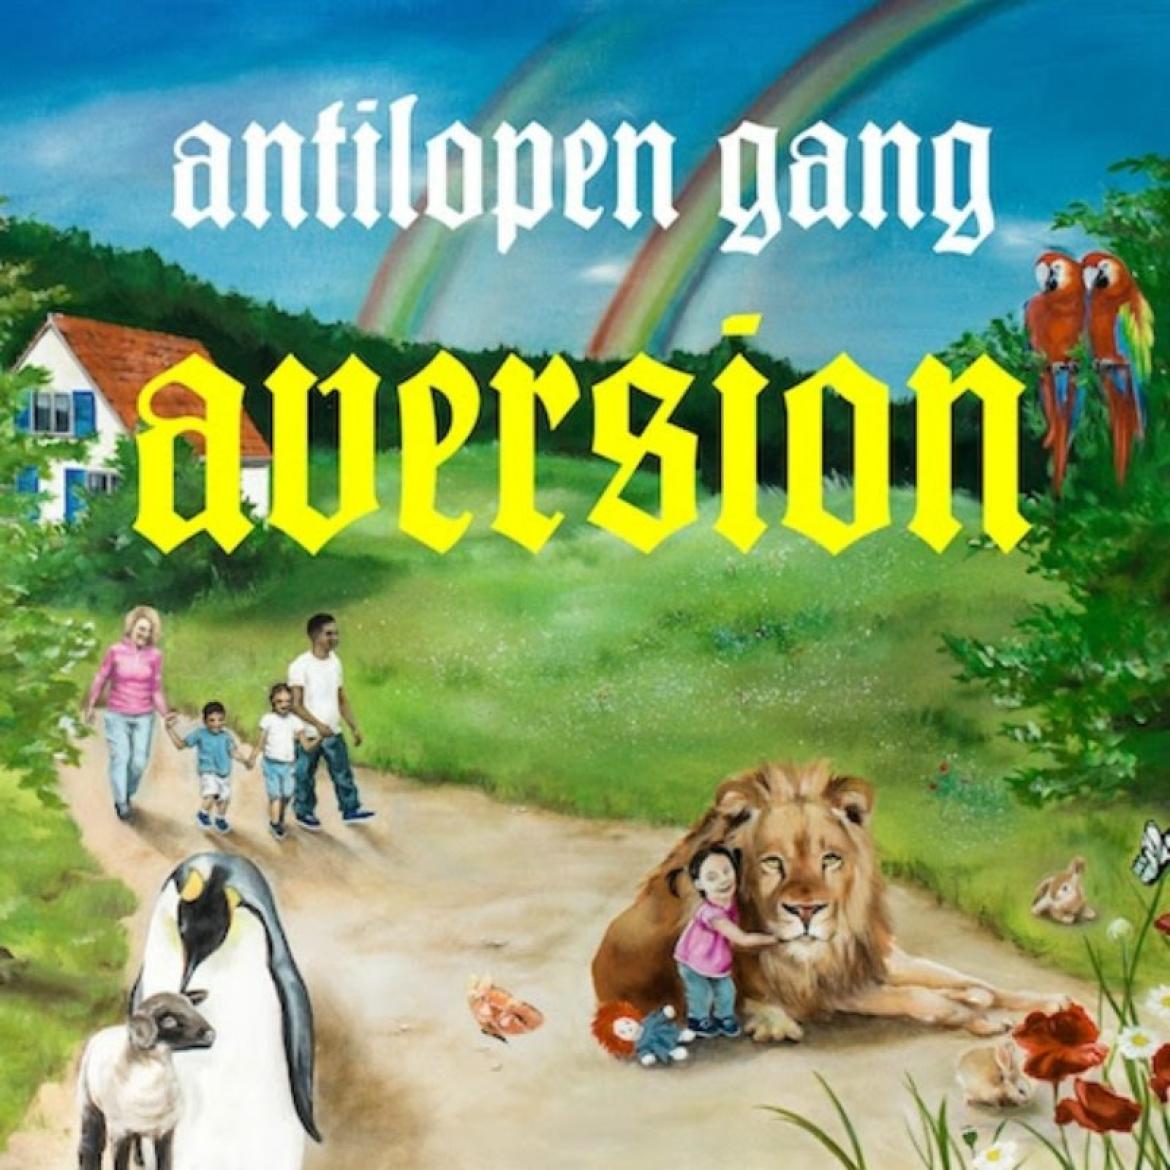 antilopen_gang_cover_800_2014.jpg